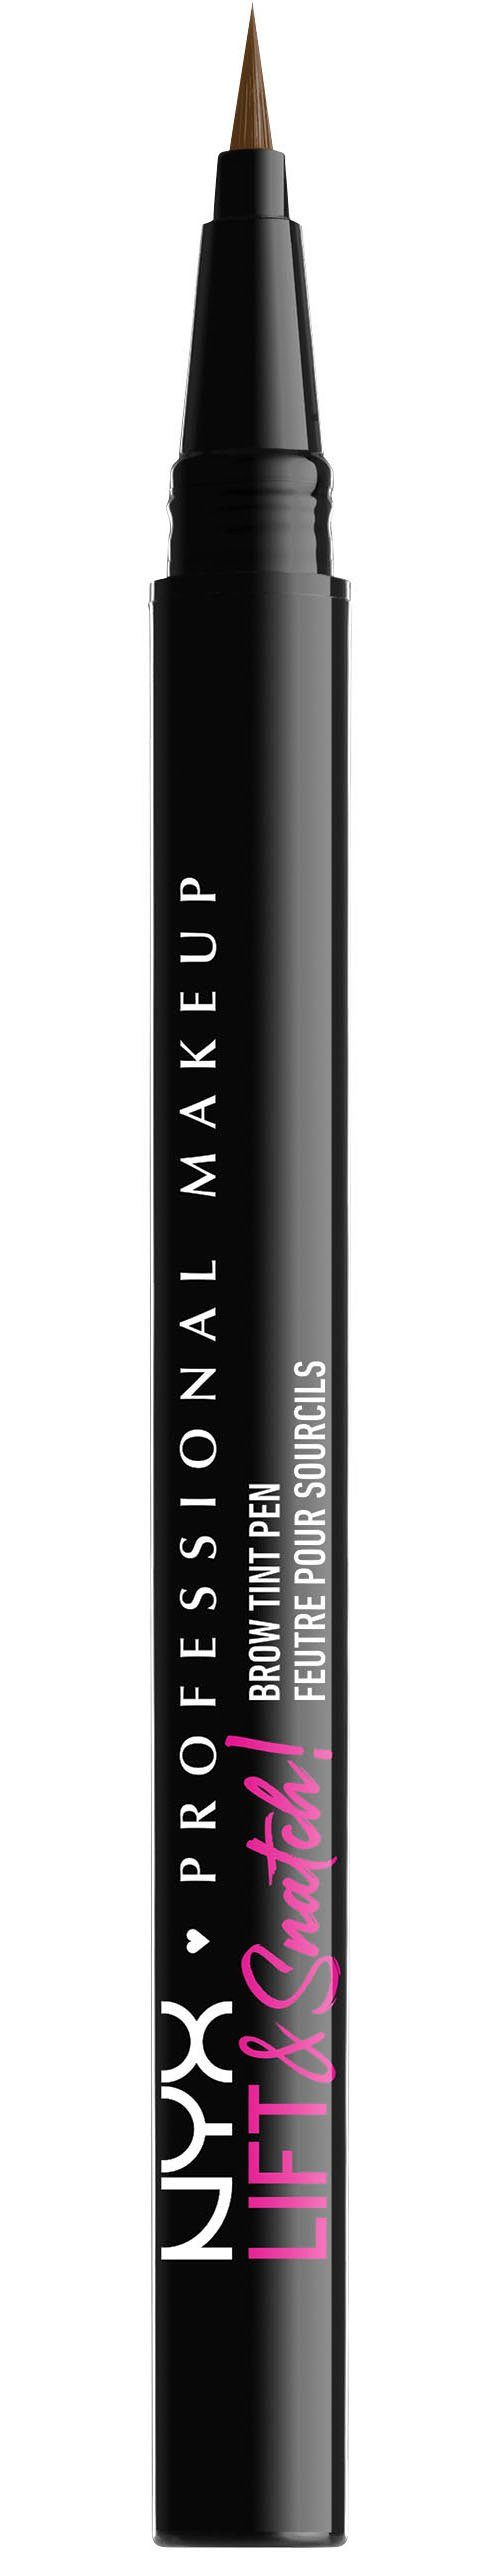 NYX Augenbrauen-Stift Professional Makeup Lift & Snatch Brow Tint Pen brunette | Augenbrauen